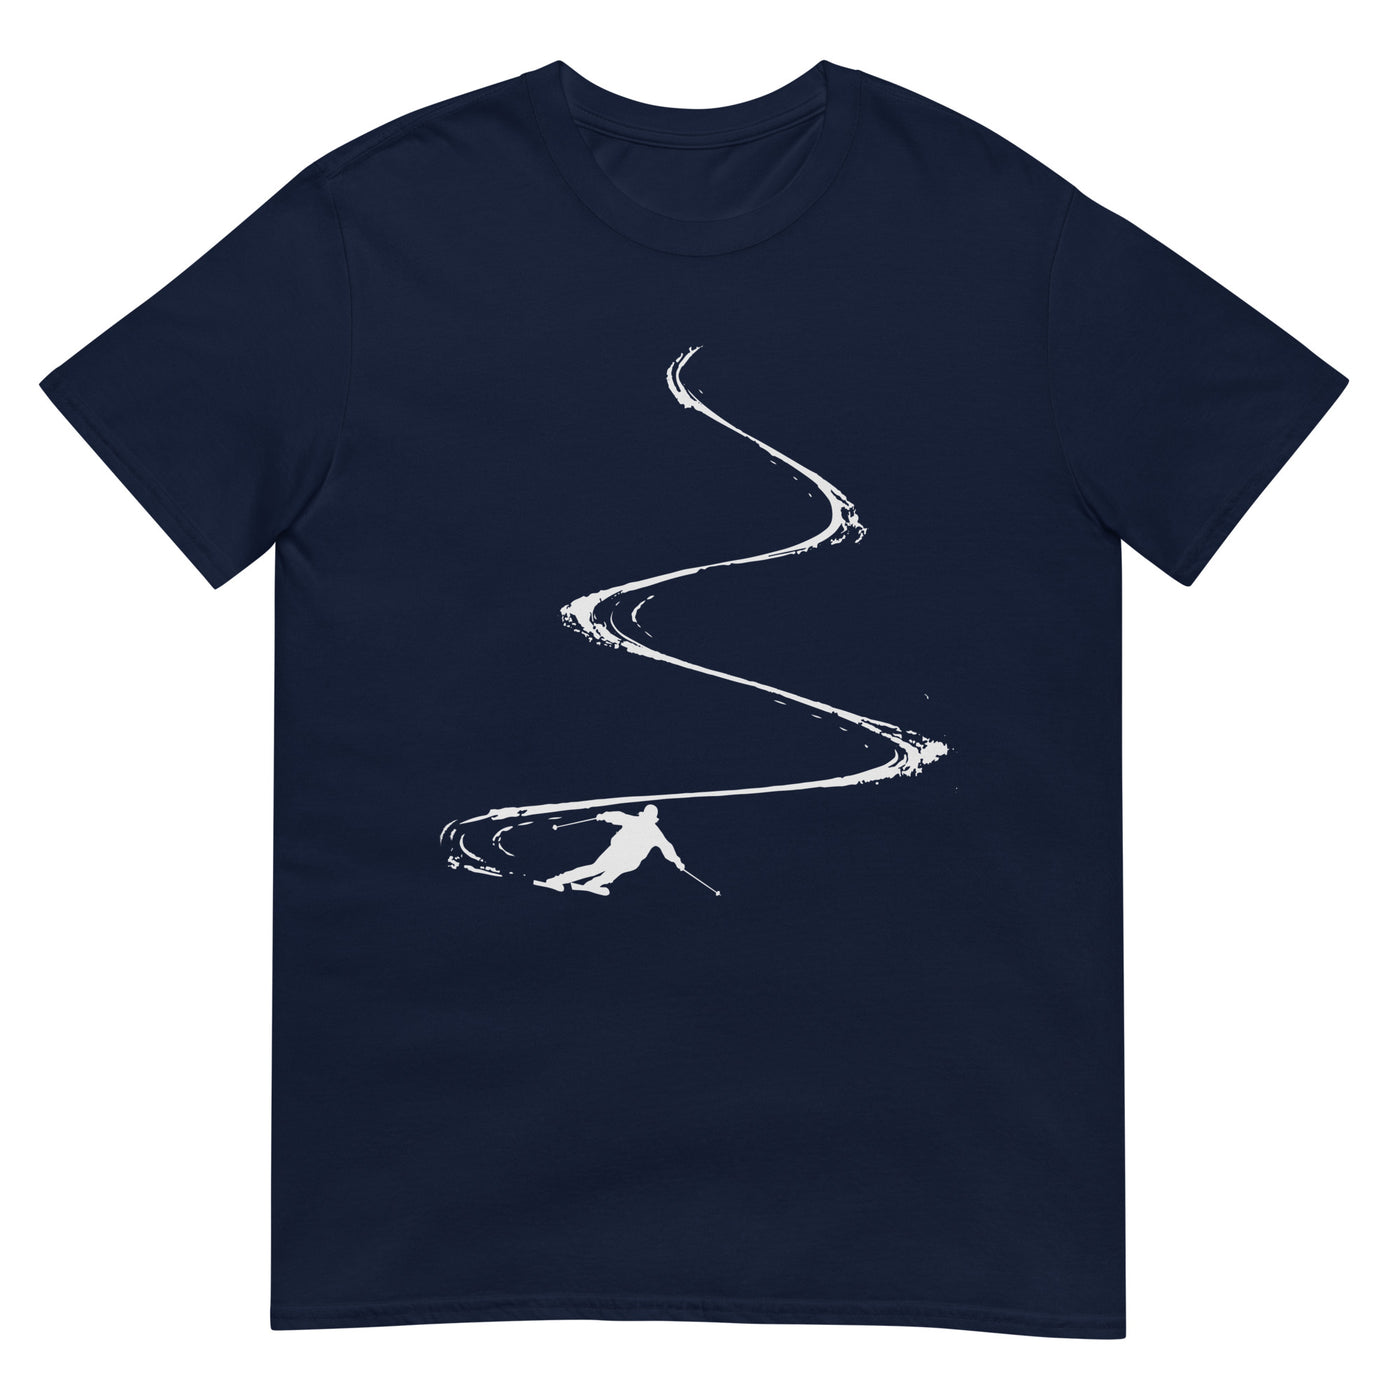 Skibrettln - T-Shirt (Unisex) klettern ski xxx yyy zzz Navy